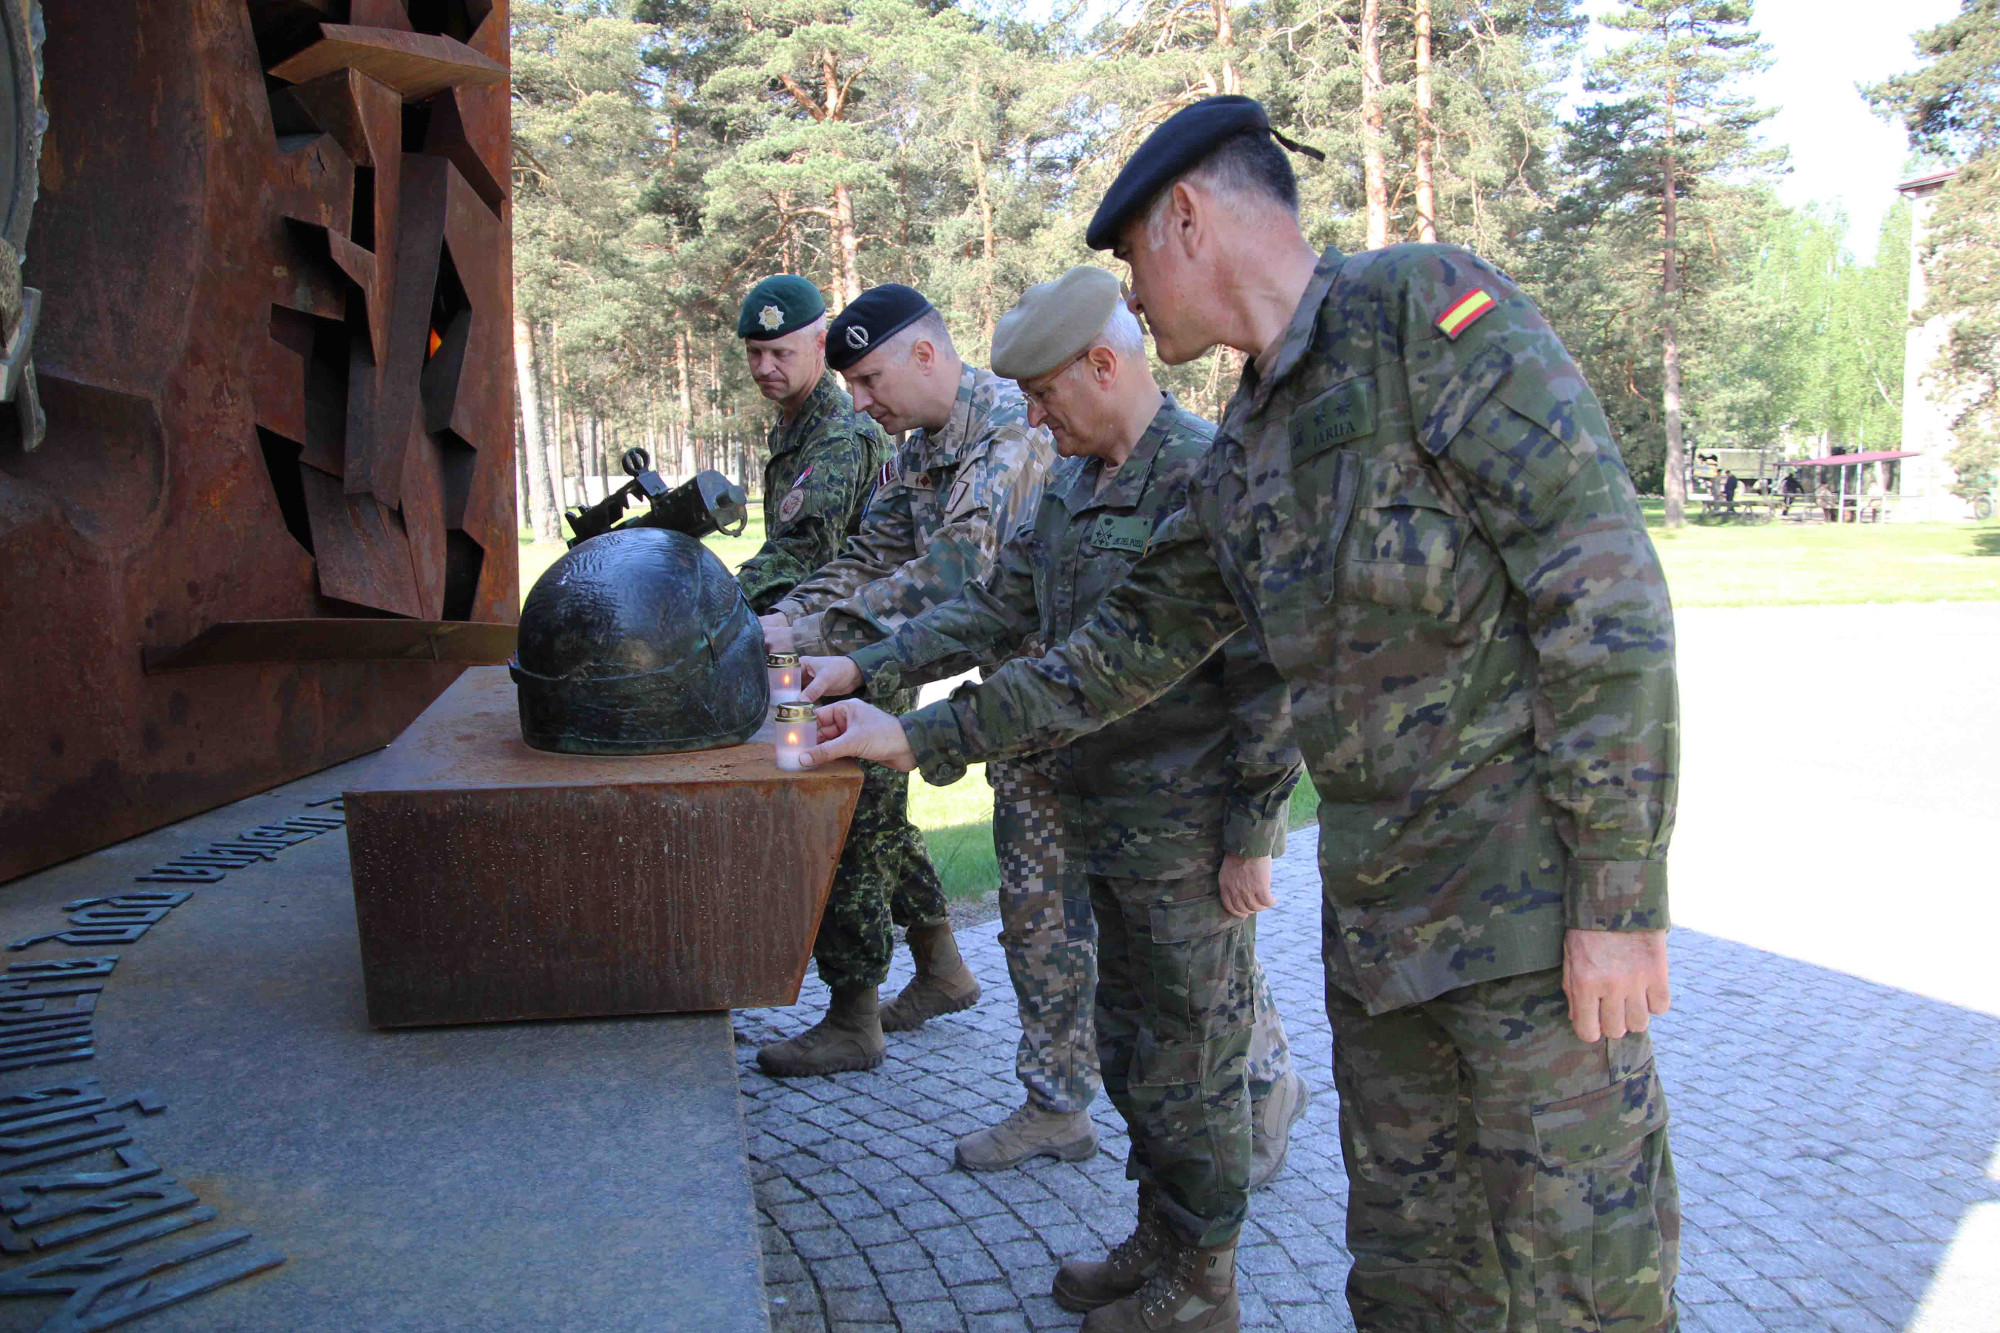 El Comandante del Mando de Operaciones anima a los militares en Letonia a seguir con la excelente labor en esta misión